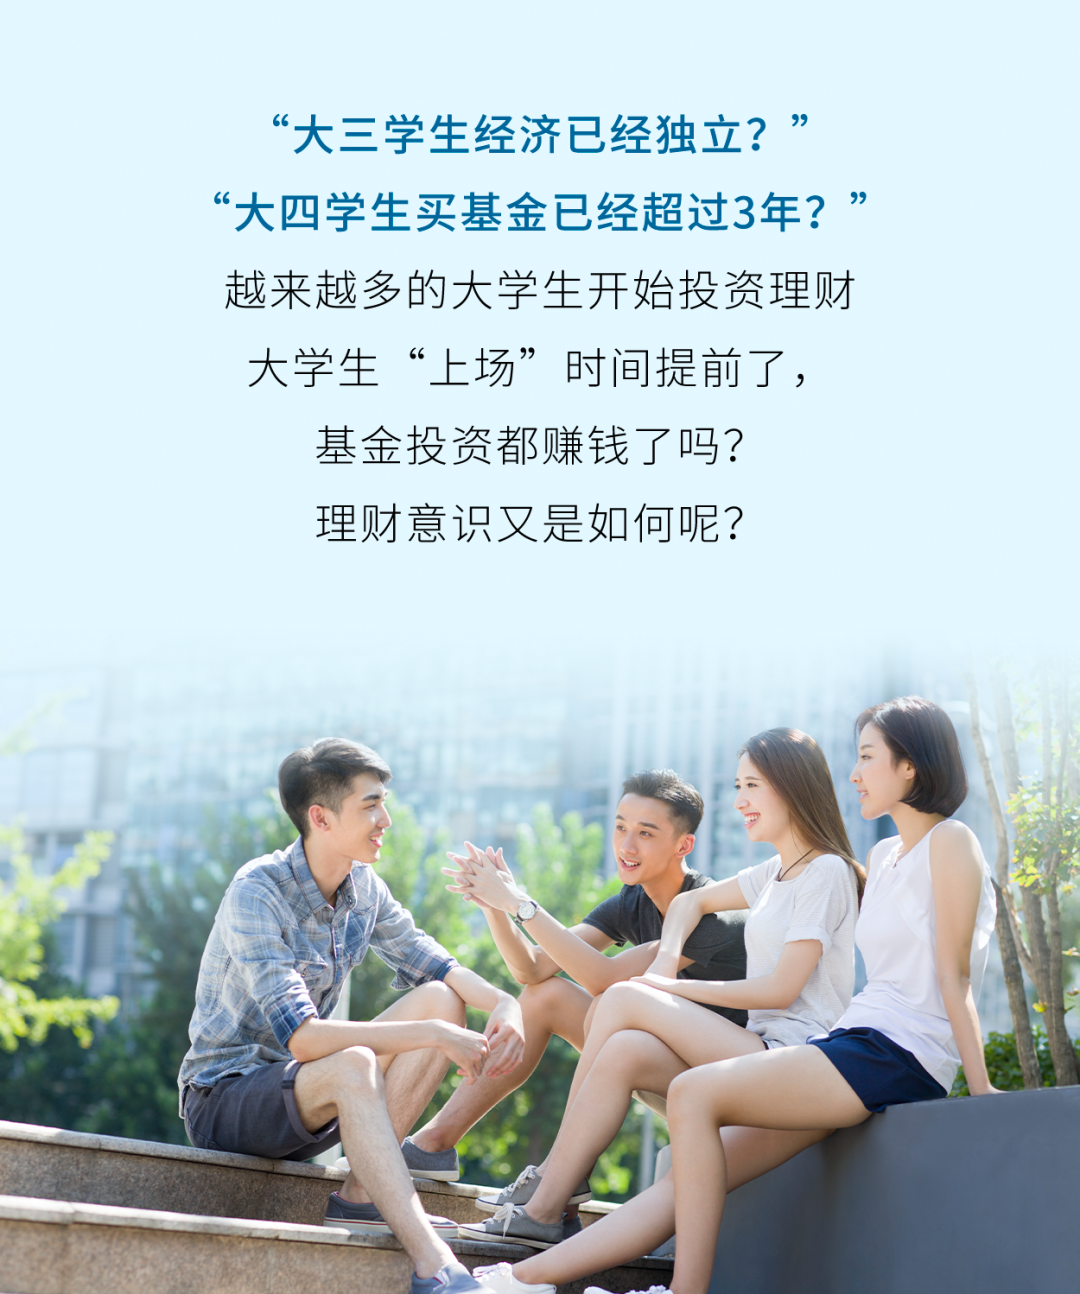 《中国大学生基金投资行为调查》邀你来参与！上投摩根启动2022年“一司一省一高校”投教活动